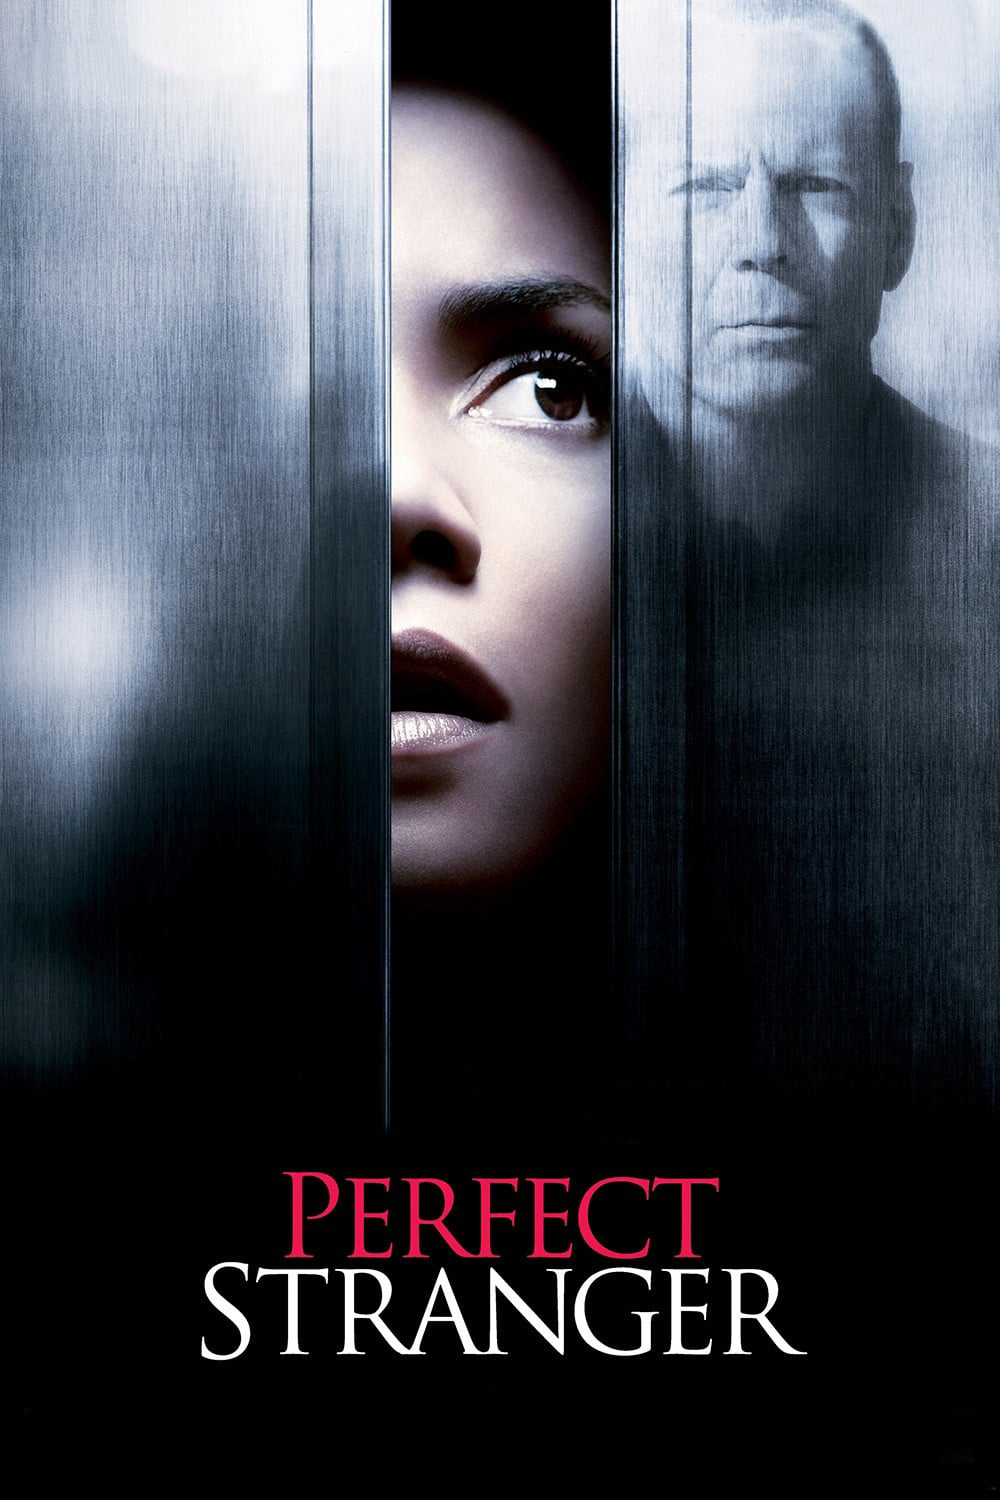 Poster Phim Perfect Stranger (Perfect Stranger)